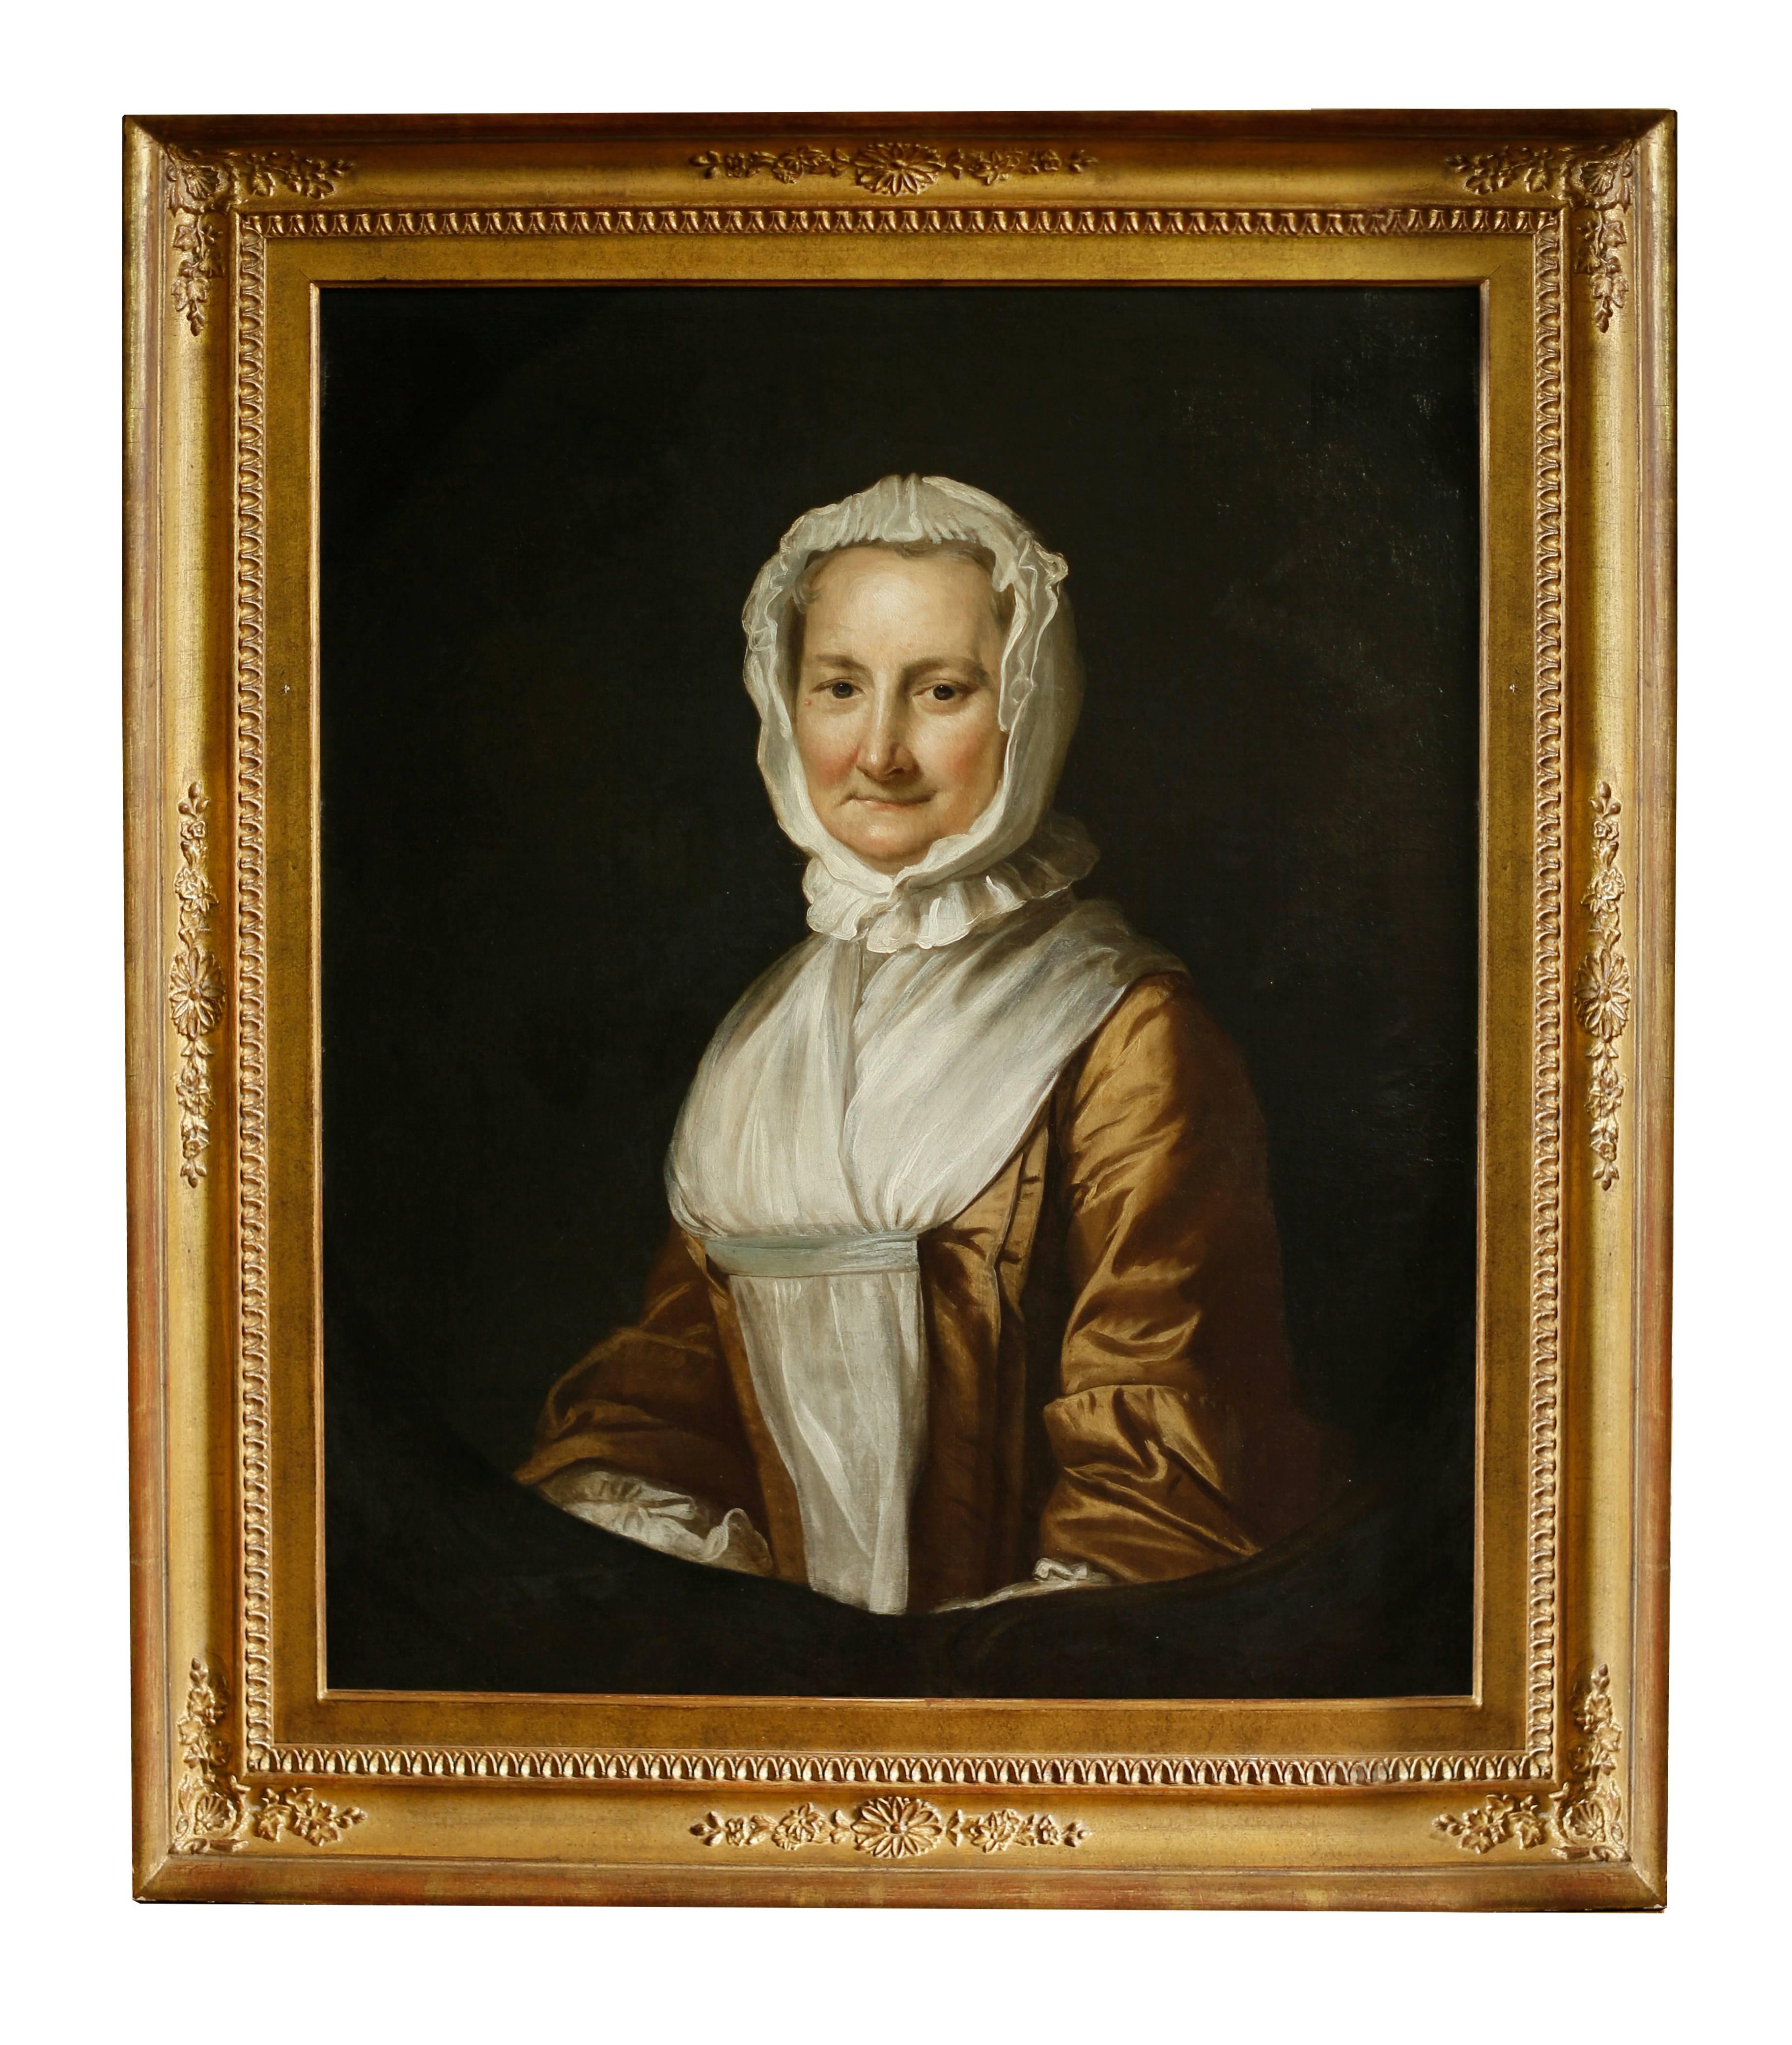 Une paire attrayante de portraits coloniaux américains du milieu du 18e siècle, réalisés à l'huile sur toile. Les détails et le rendu des peintures sont d'une qualité extrêmement fine. Les figures très contrastées sur les fonds sombres font